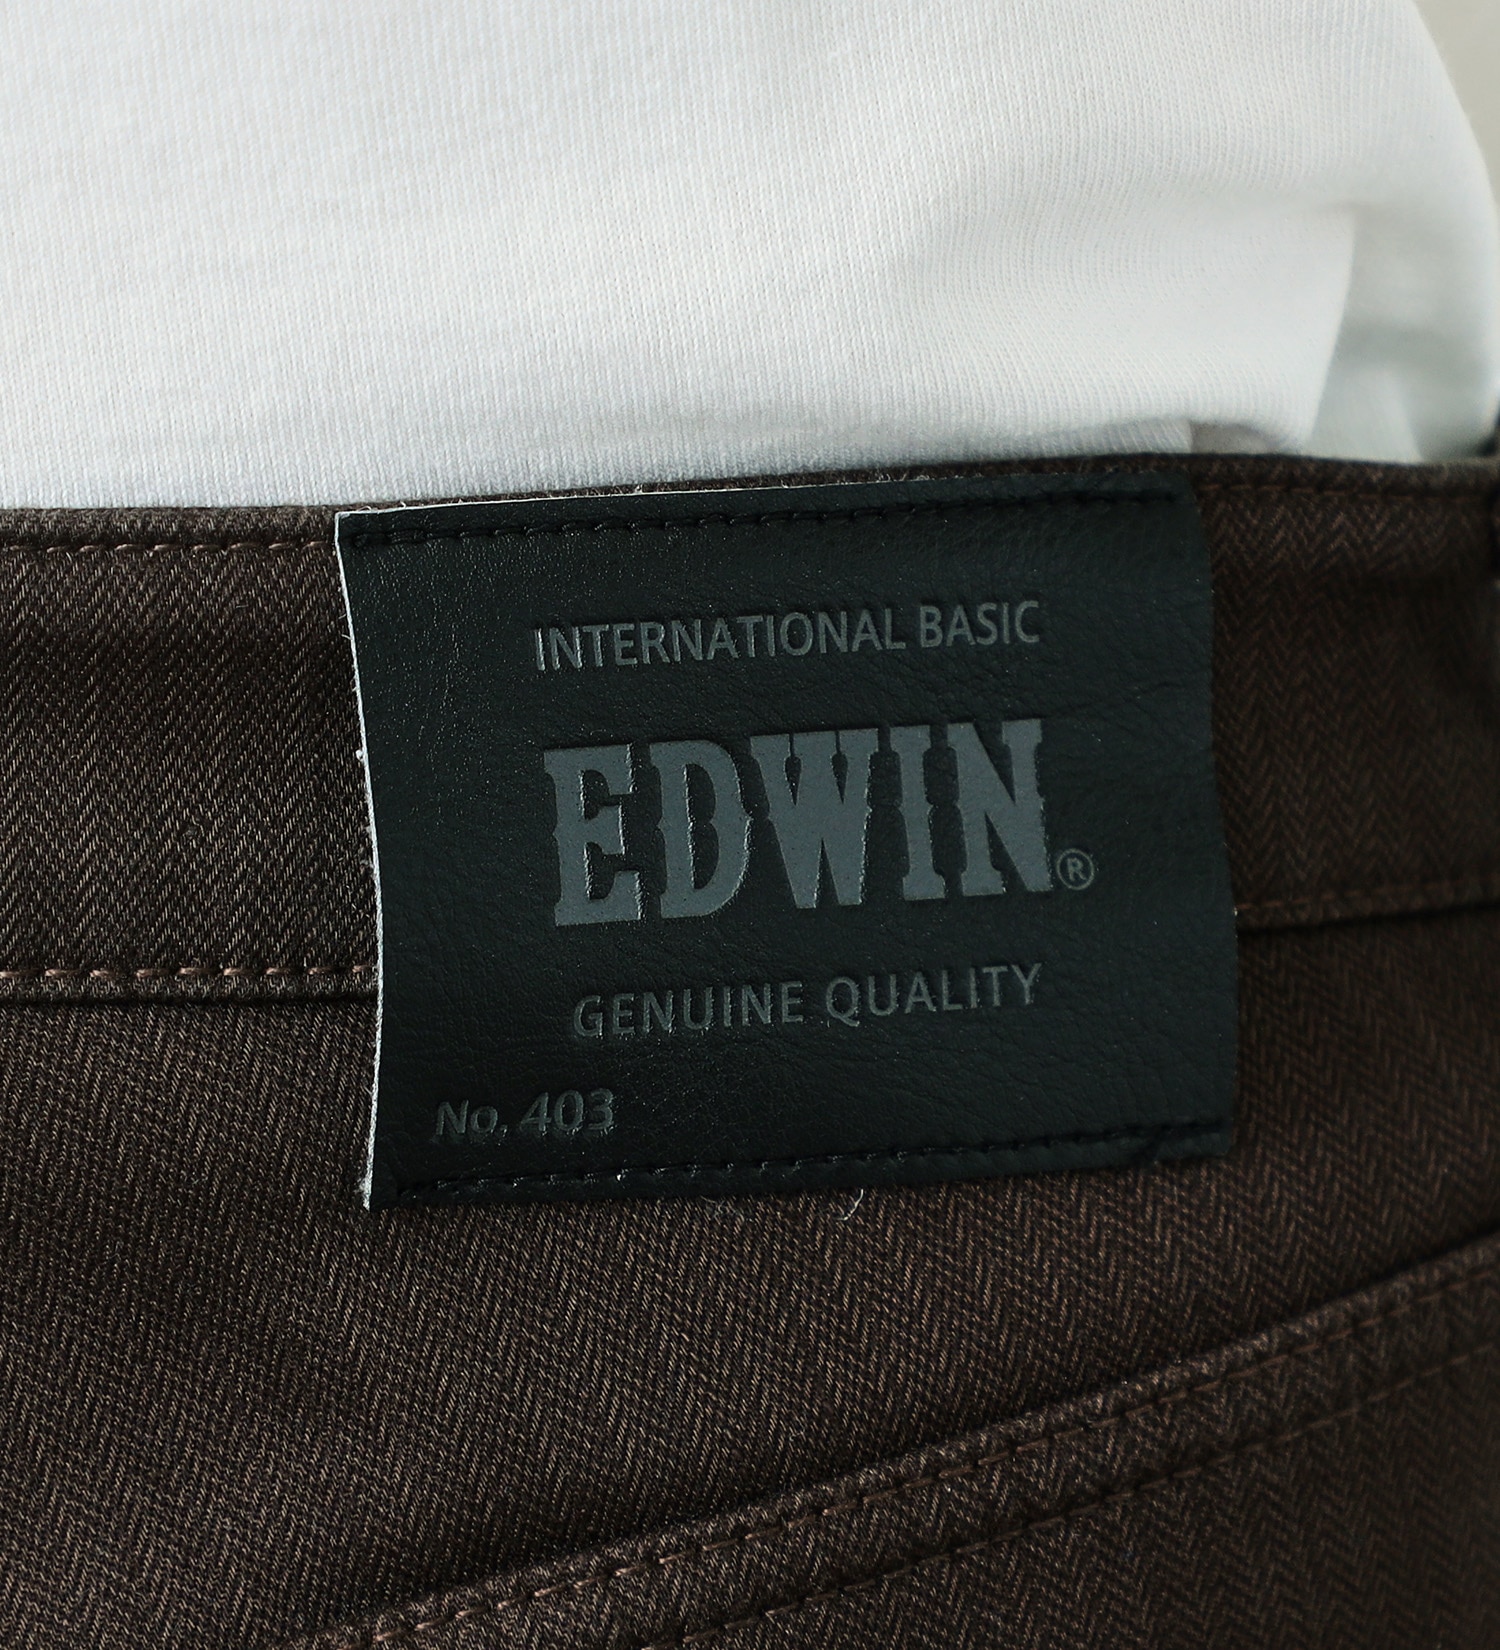 EDWIN(エドウイン)の【BLACKFRIDAY】2層で暖かい EDWIN インターナショナルベーシック レギュラーストレートパンツ403 WILD FIRE 2層ボンディング構造 【暖】|パンツ/パンツ/メンズ|ブラウン